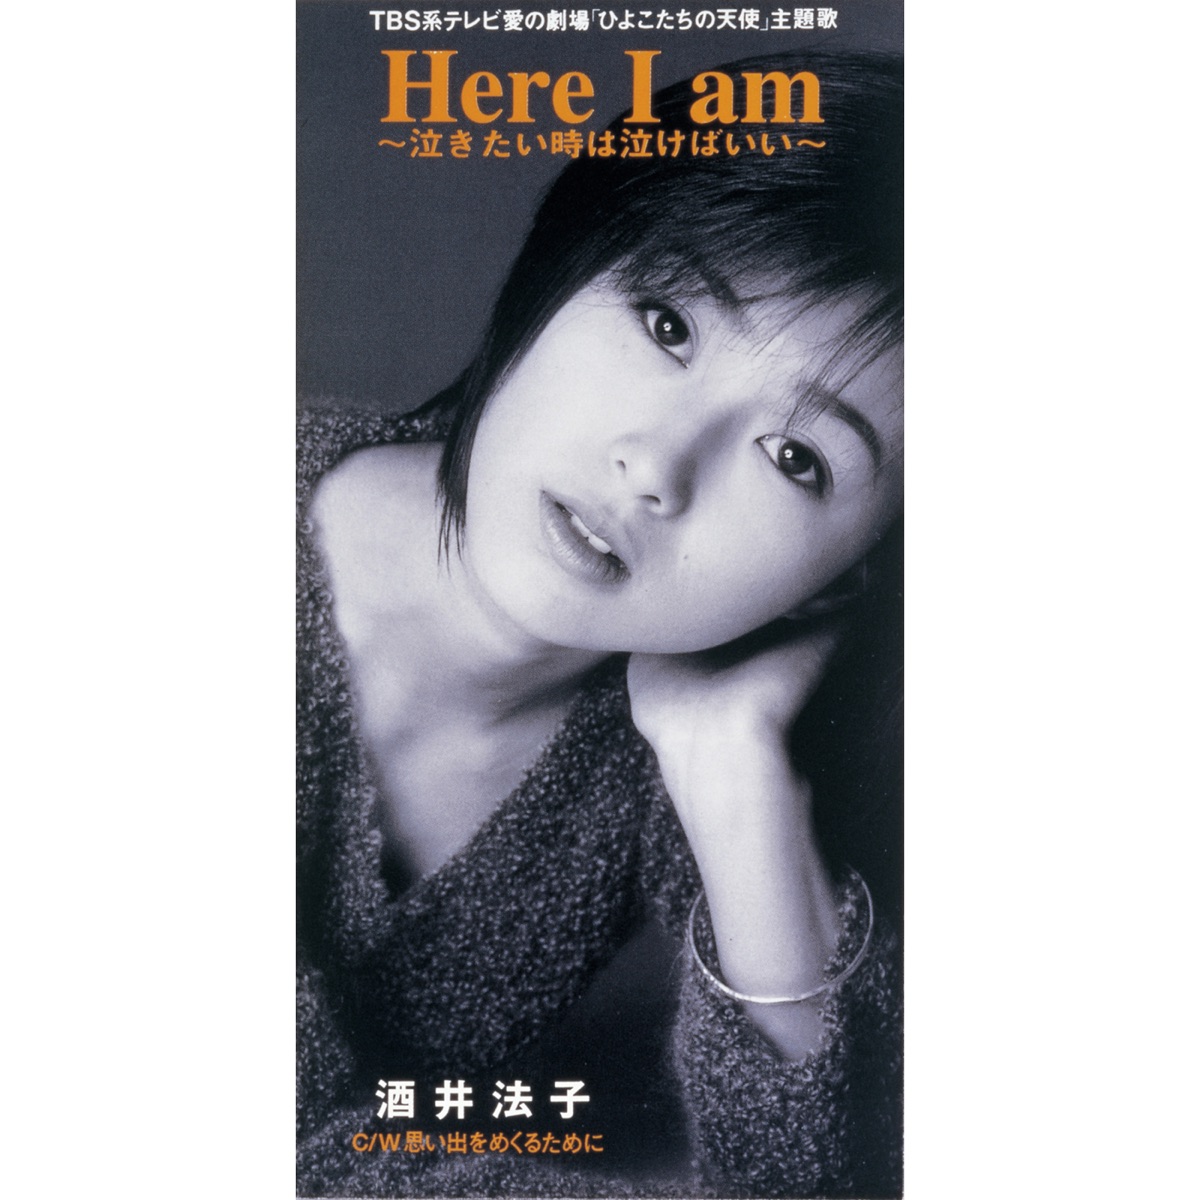 酒井法子 - Here I am ~泣きたい时は泣けばいい~ - EP (1996) [iTunes Plus AAC M4A]-新房子